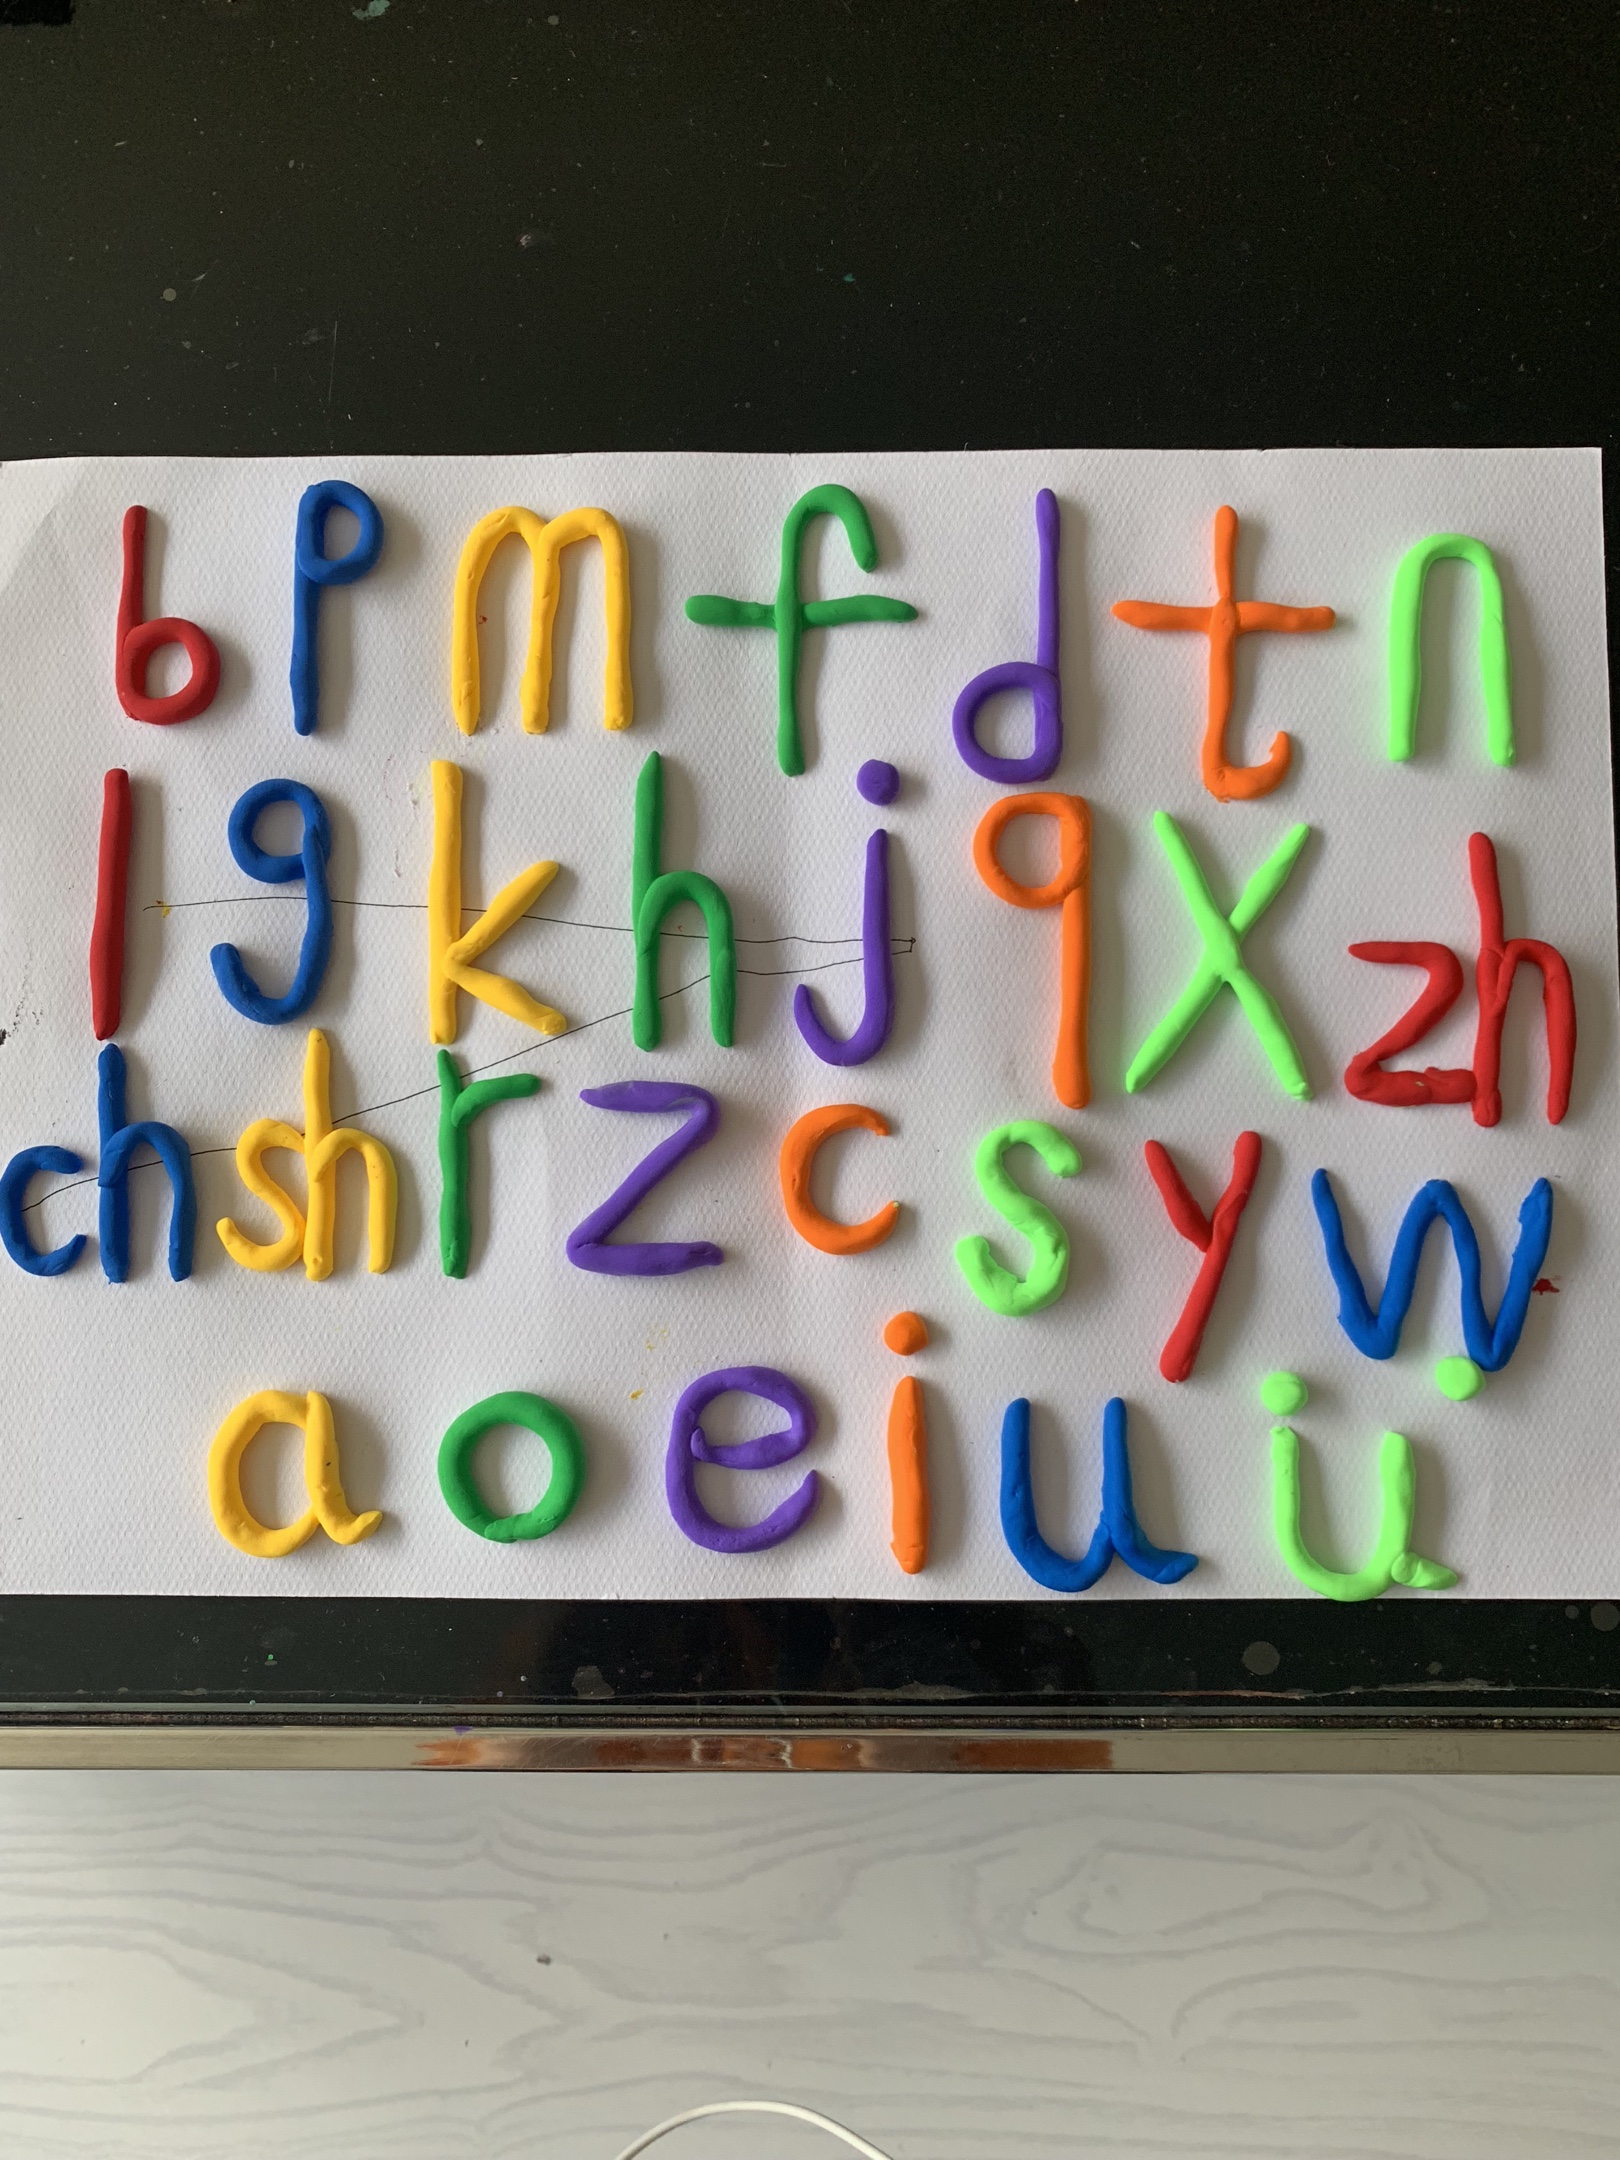 孩子们通过用橡皮泥捏拼音字母活动,捏出了五颜六色的声母宝宝,捏出